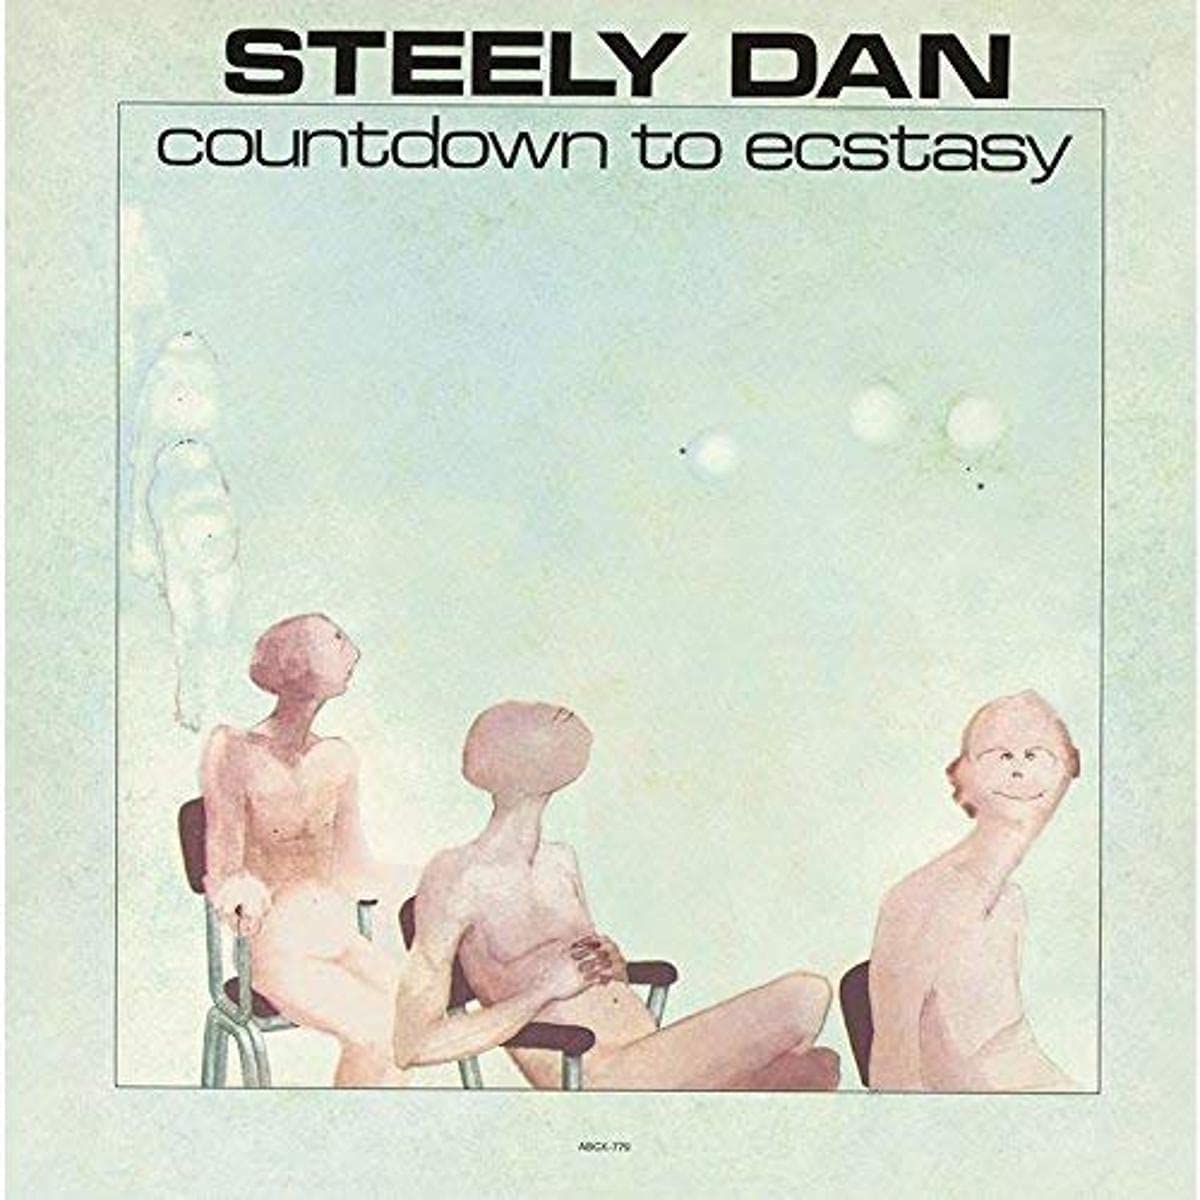 Steely Dan Countdown To Ecstacy - Ireland Vinyl